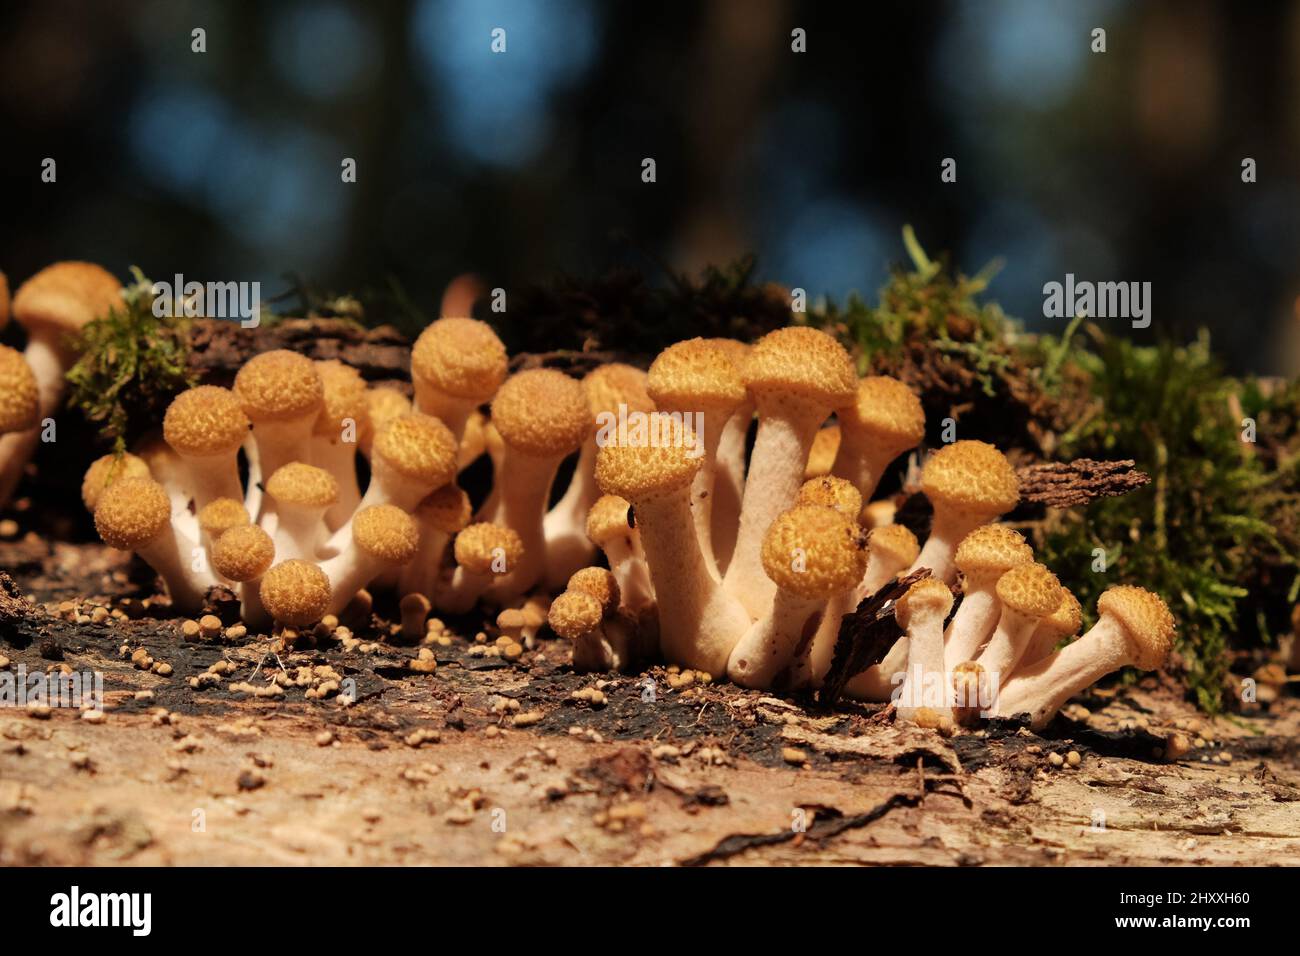 Un groupe de champignons agariques au miel pousse sur le tronc des arbres dans la forêt d'automne. Gros plan sur les champignons sauvages comestibles Armillaria. Banque D'Images